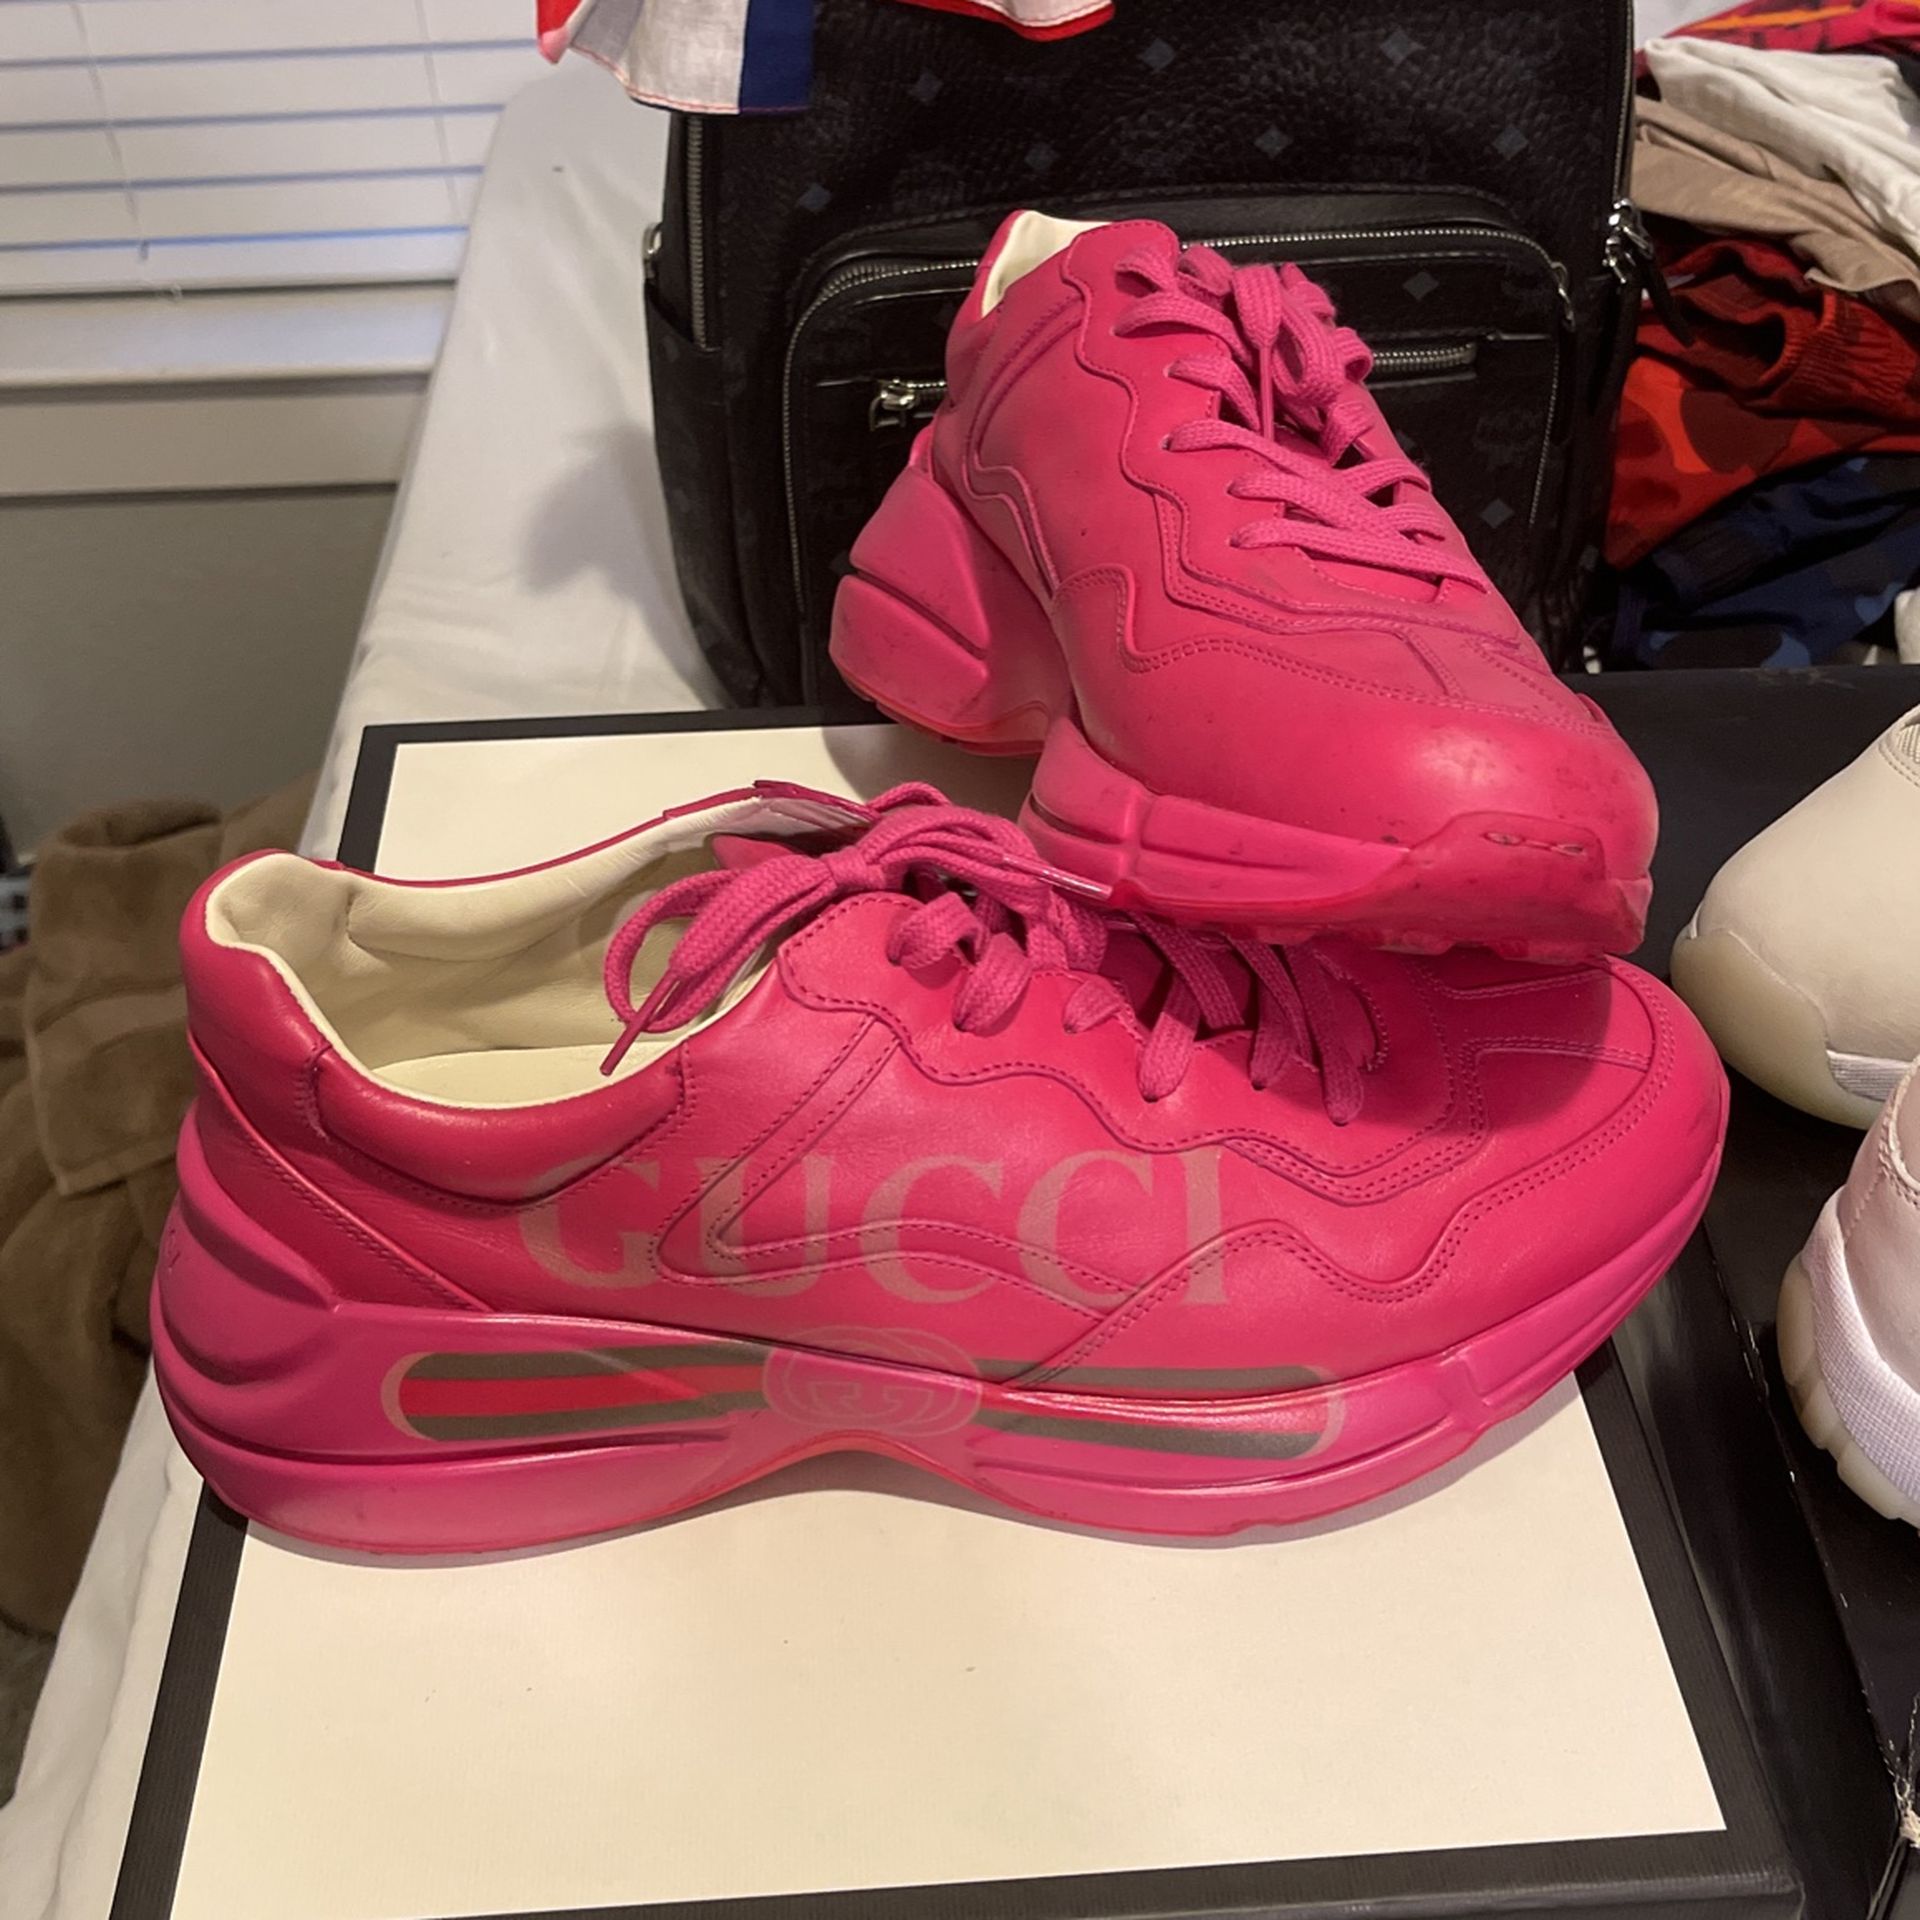 Gucci Sneakers /Apollo Box Pink/size 10